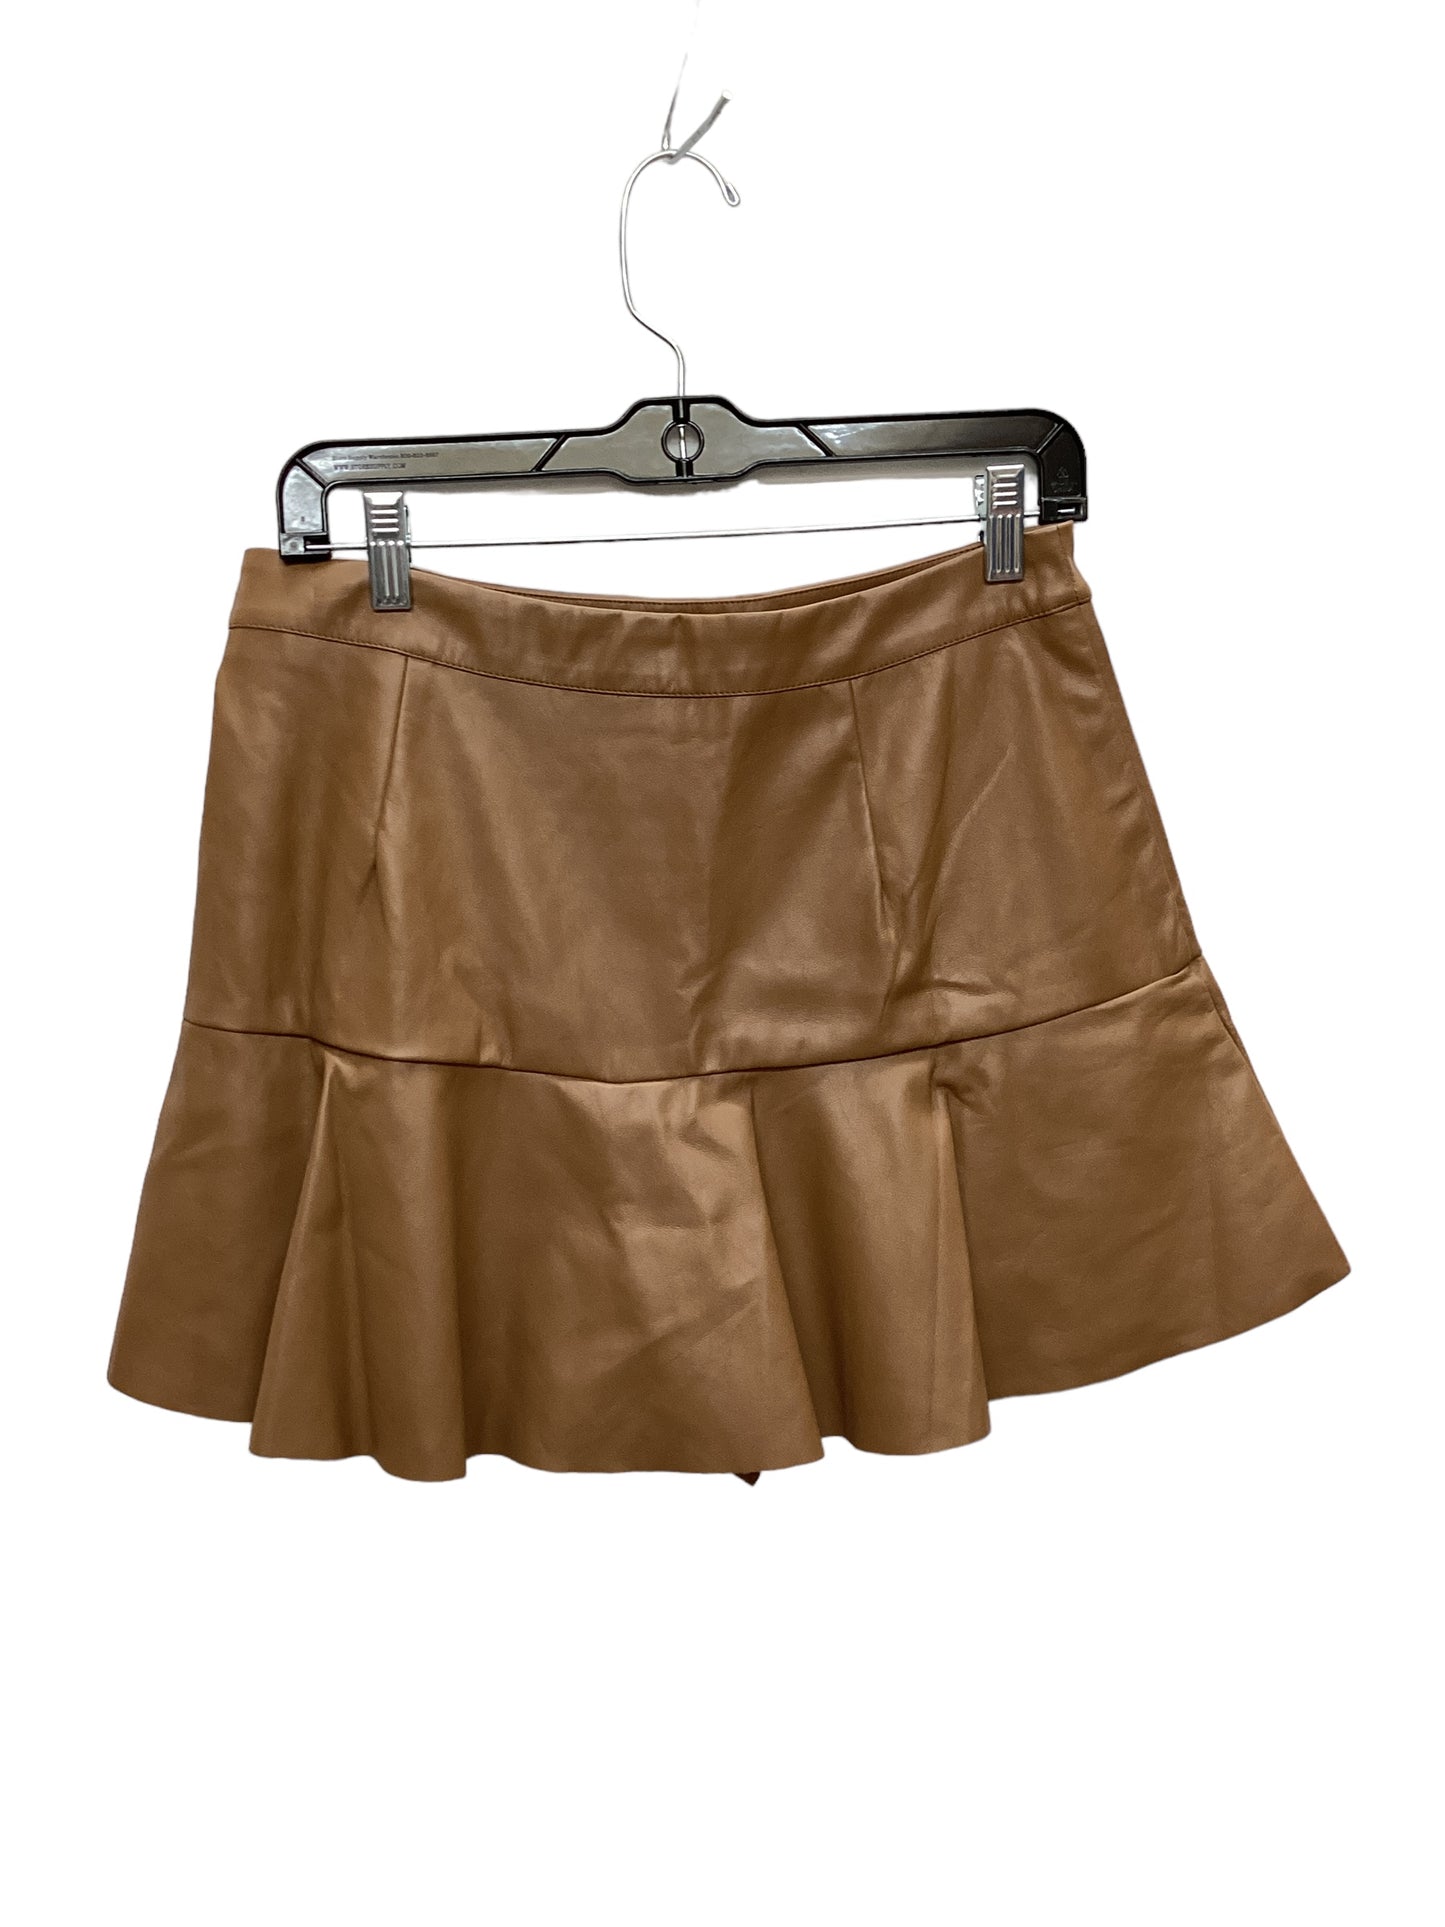 Skirt Mini & Short By Vestique  Size: L